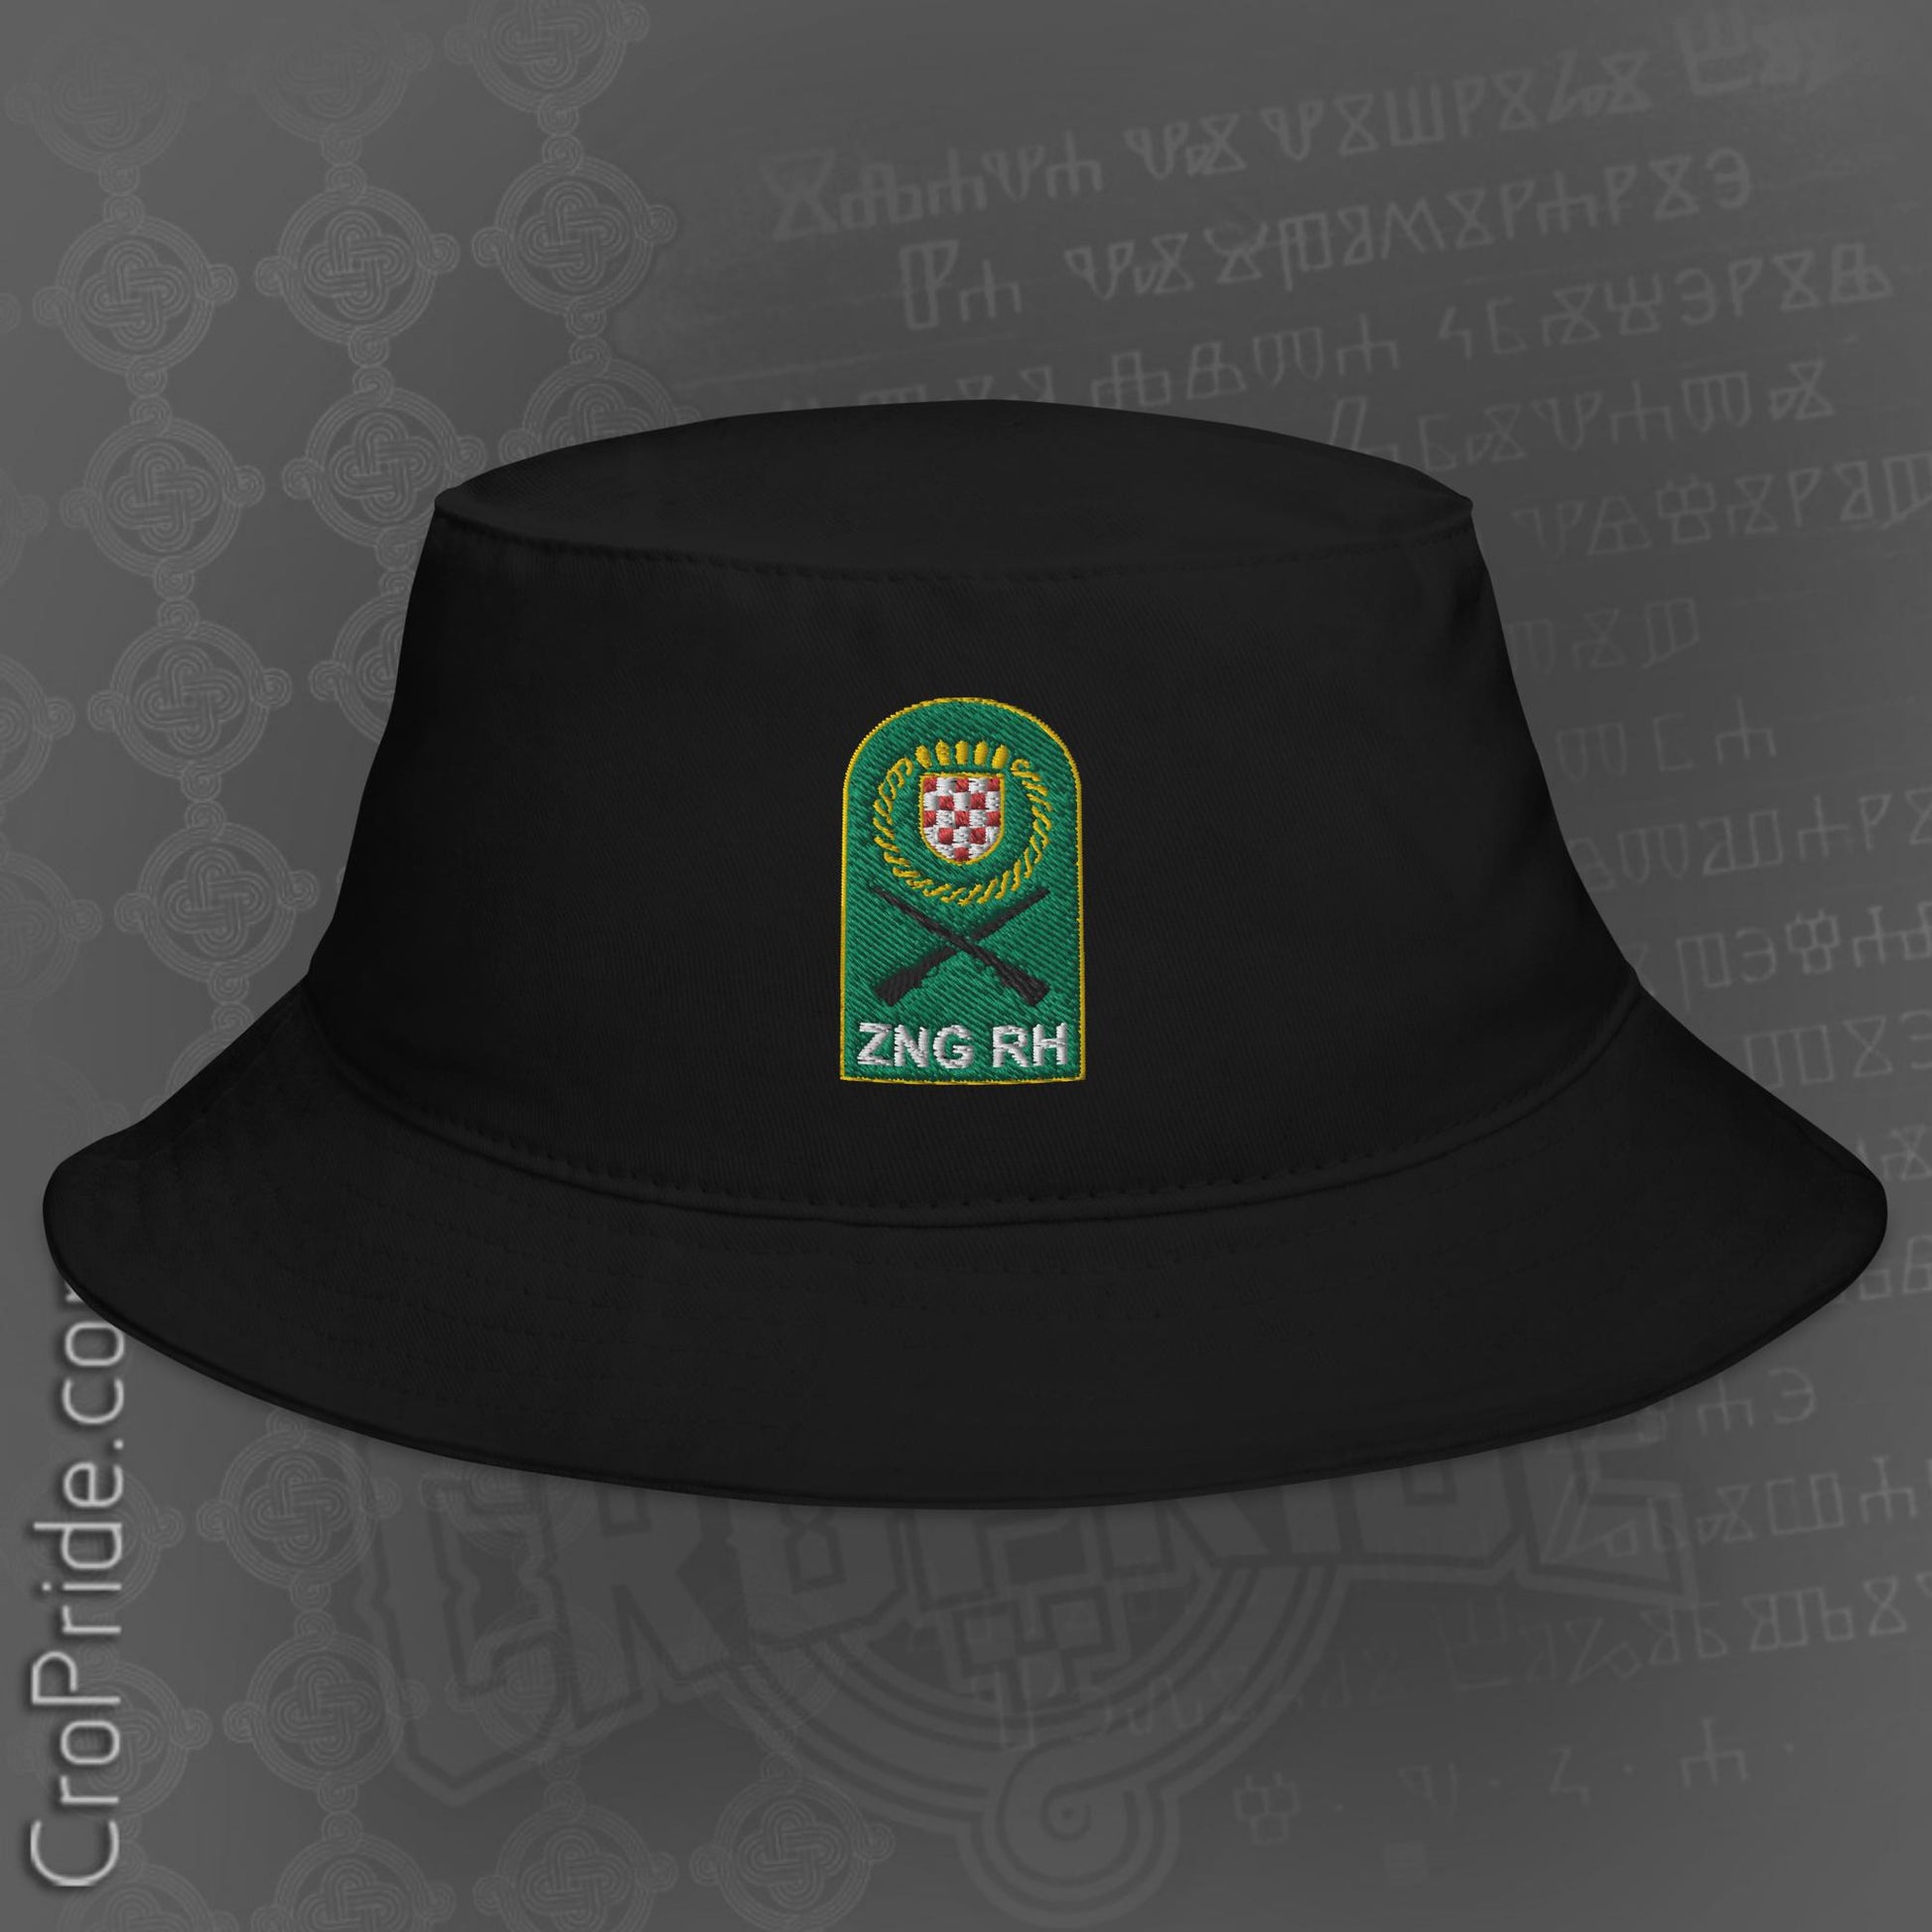 Croatian Hat: ZNG RH Bucket Hat for Croatia's Heroic Struggle